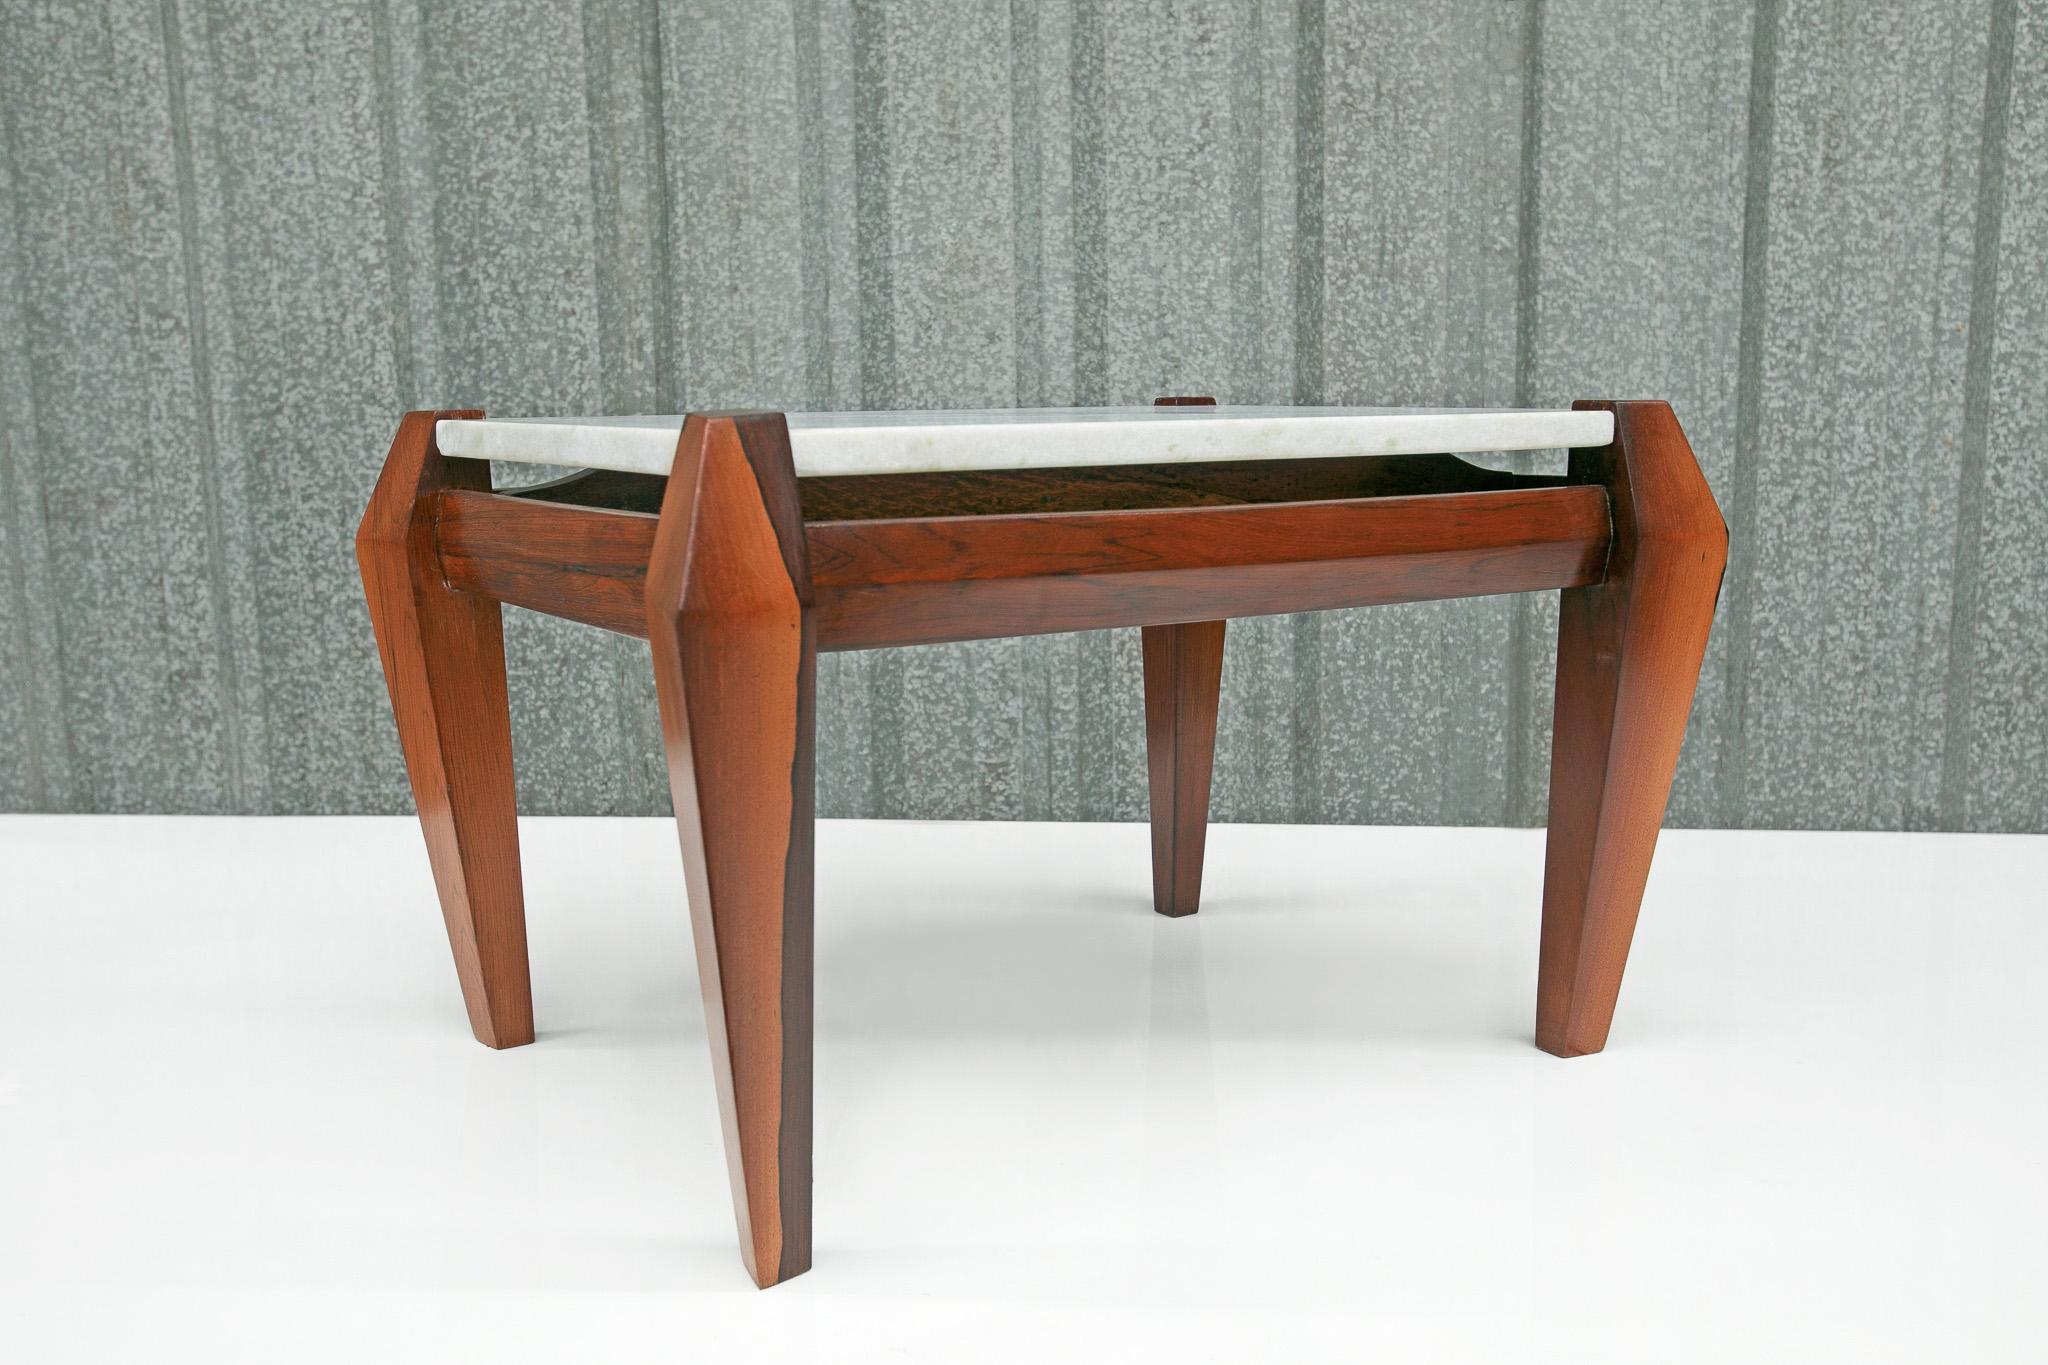 Marbre Table basse moderne brésilienne en bois de feuillus et marbre, Jean Gillon, 1968, Brésil